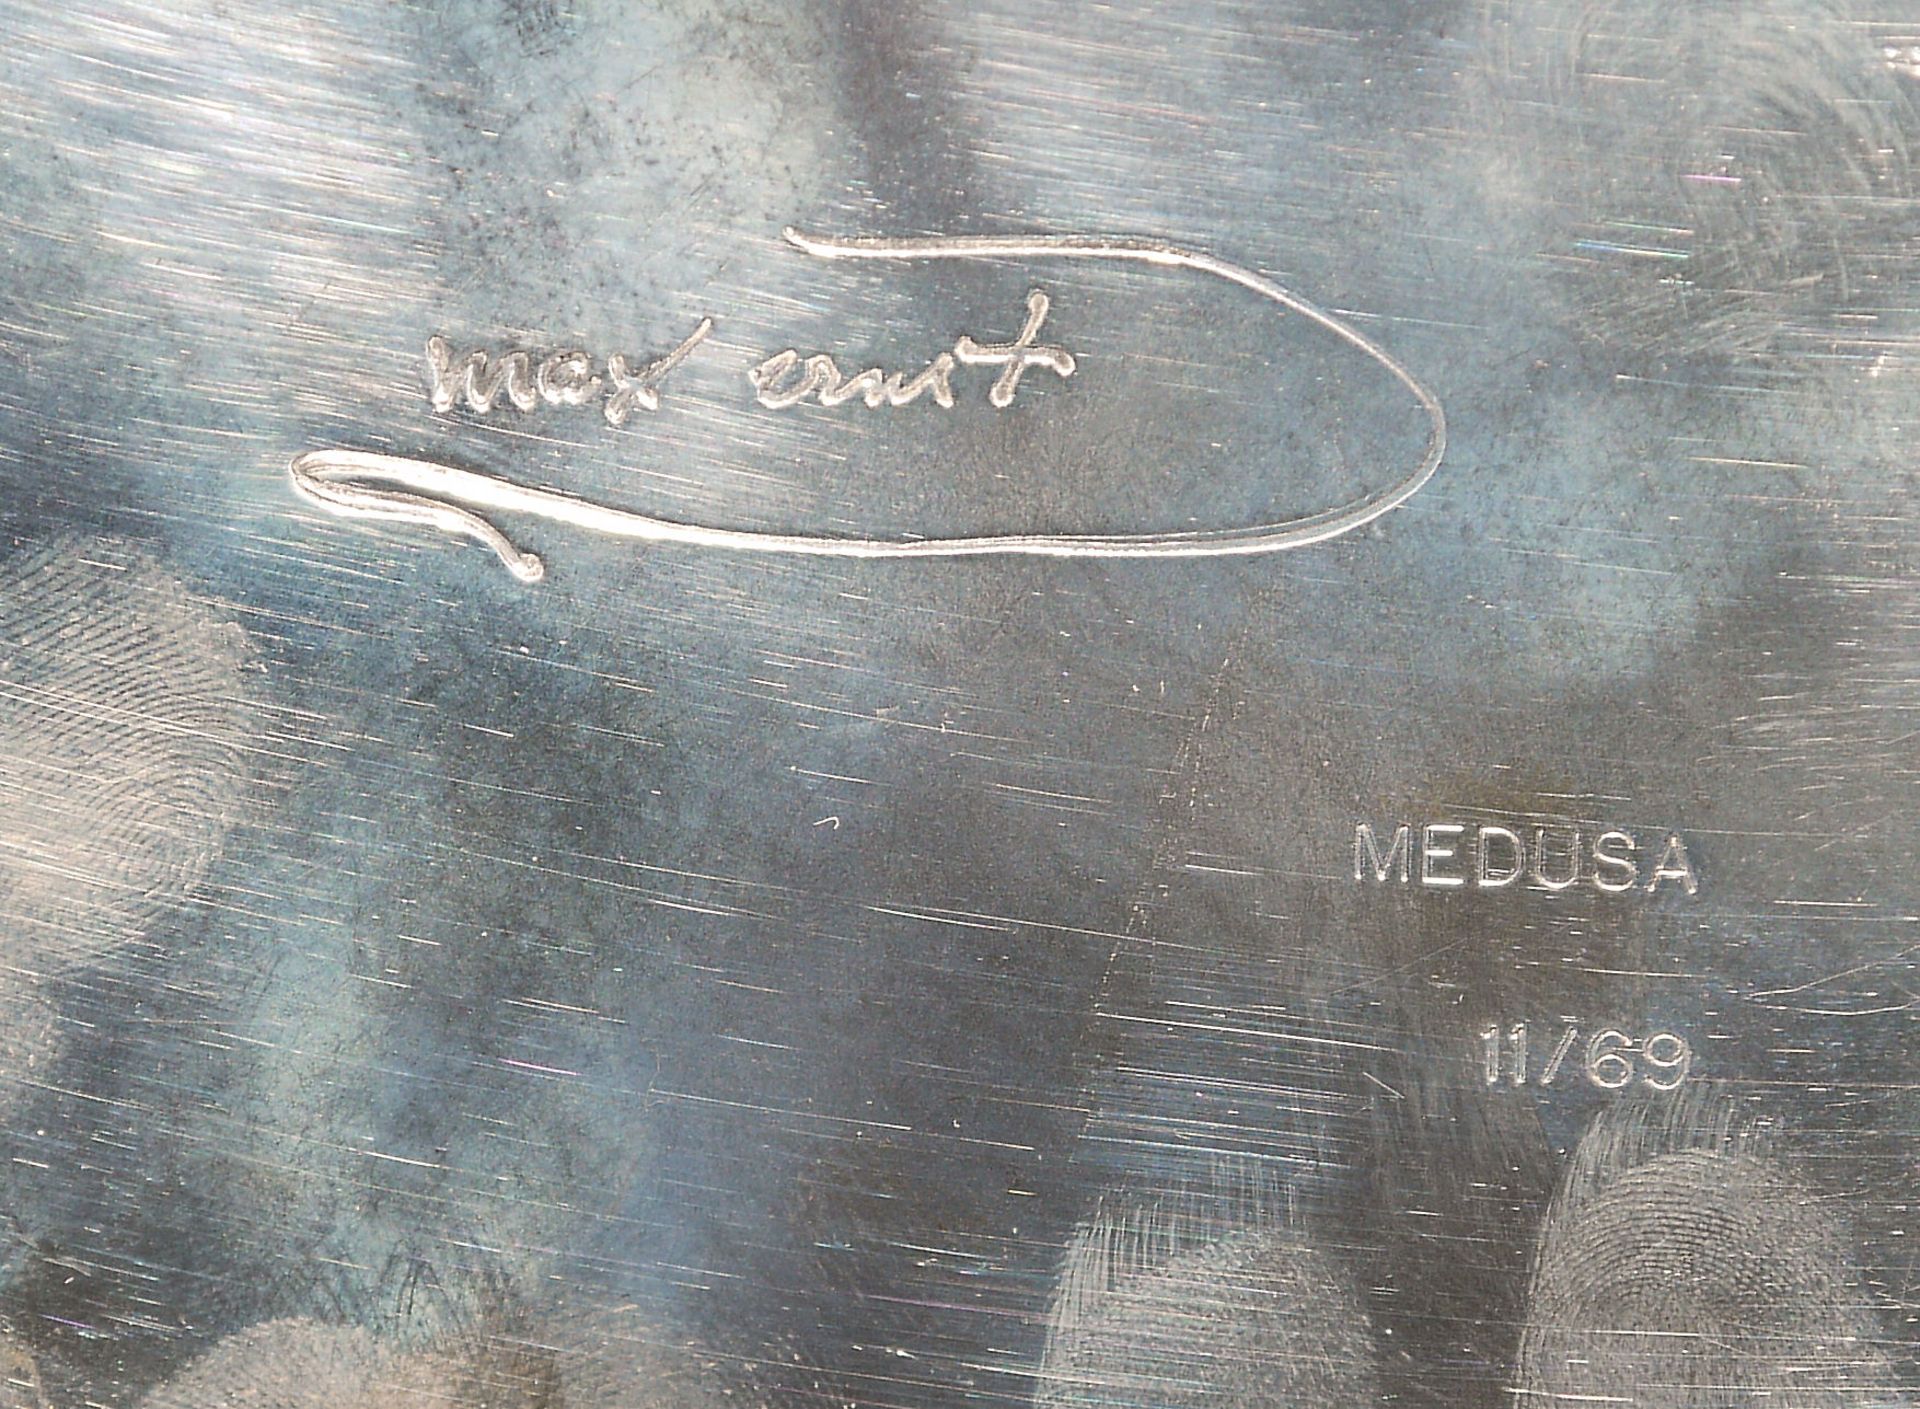 Max Ernst, Silber-Reliefteller "Medusa", 1960er Jahre, signiert - Bild 2 aus 2